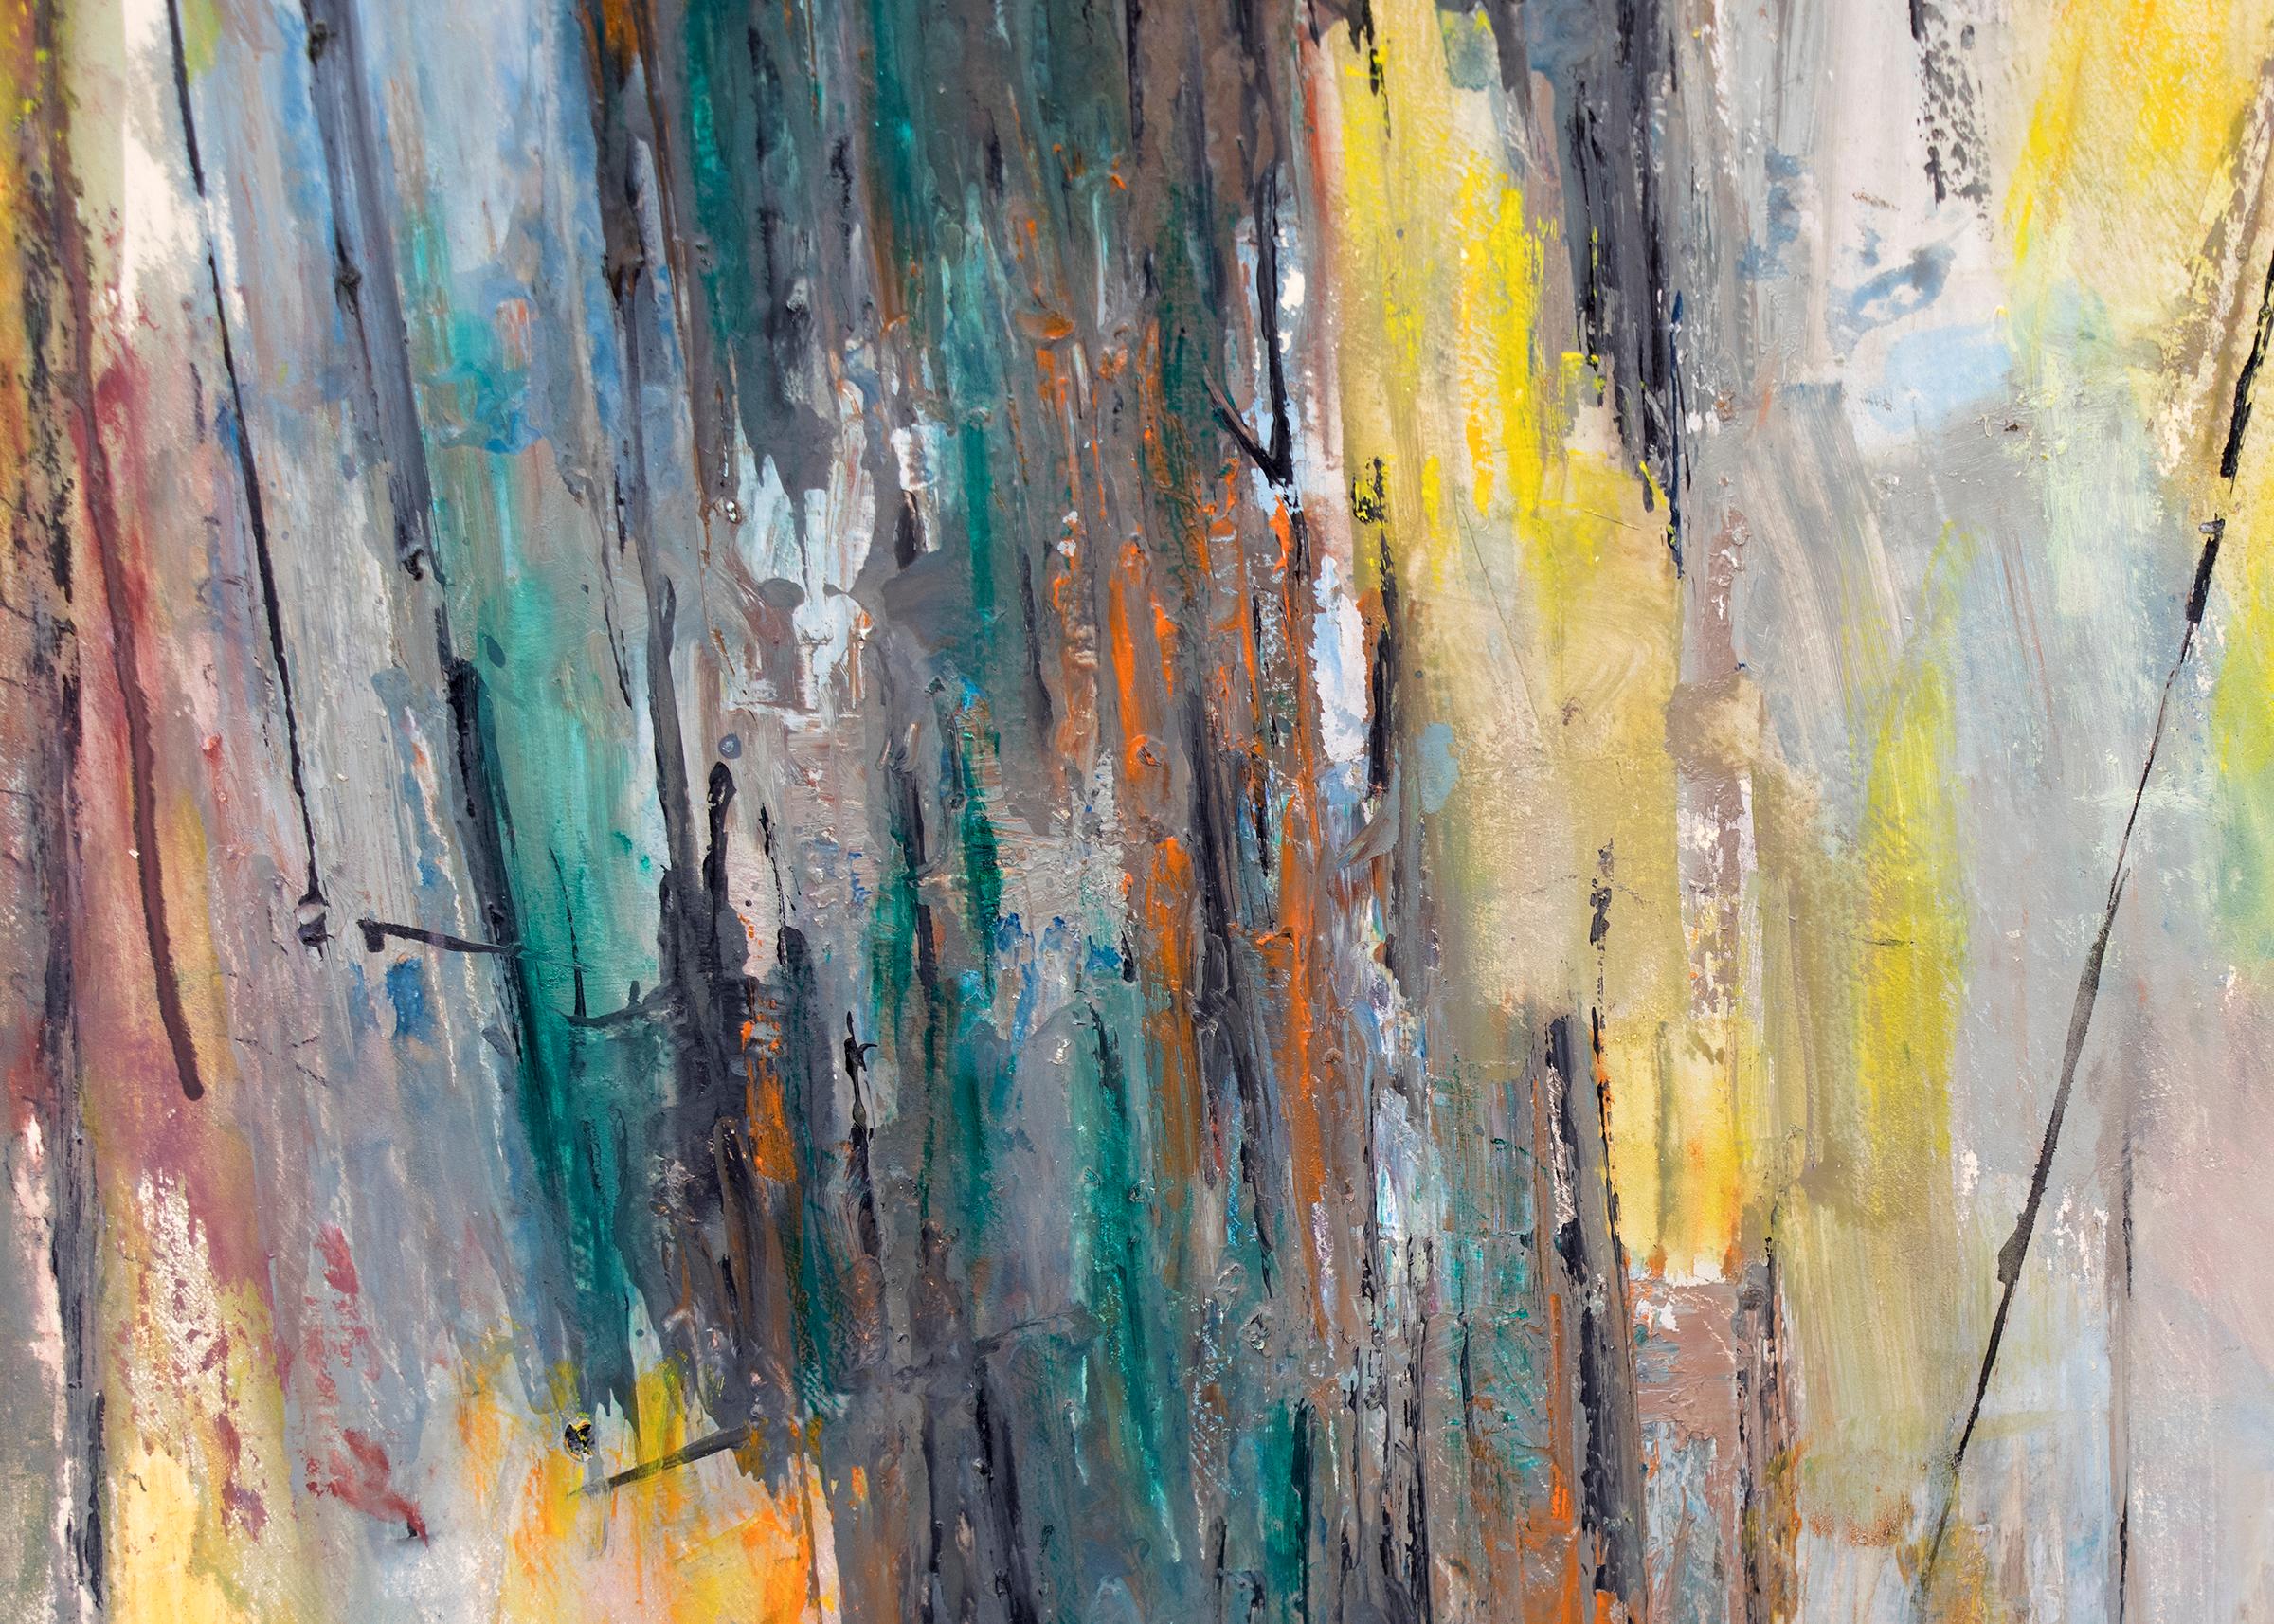 Original 1958 Mitte des Jahrhunderts moderne Ölgemälde von Charles Bunnell (1897-1968), abstrakte expressionistische Komposition in den Farben Gelb, Blau, Teal, Grün, Grau, Orange, Rot und Weiß, signiert und datiert unten rechts. Präsentiert in